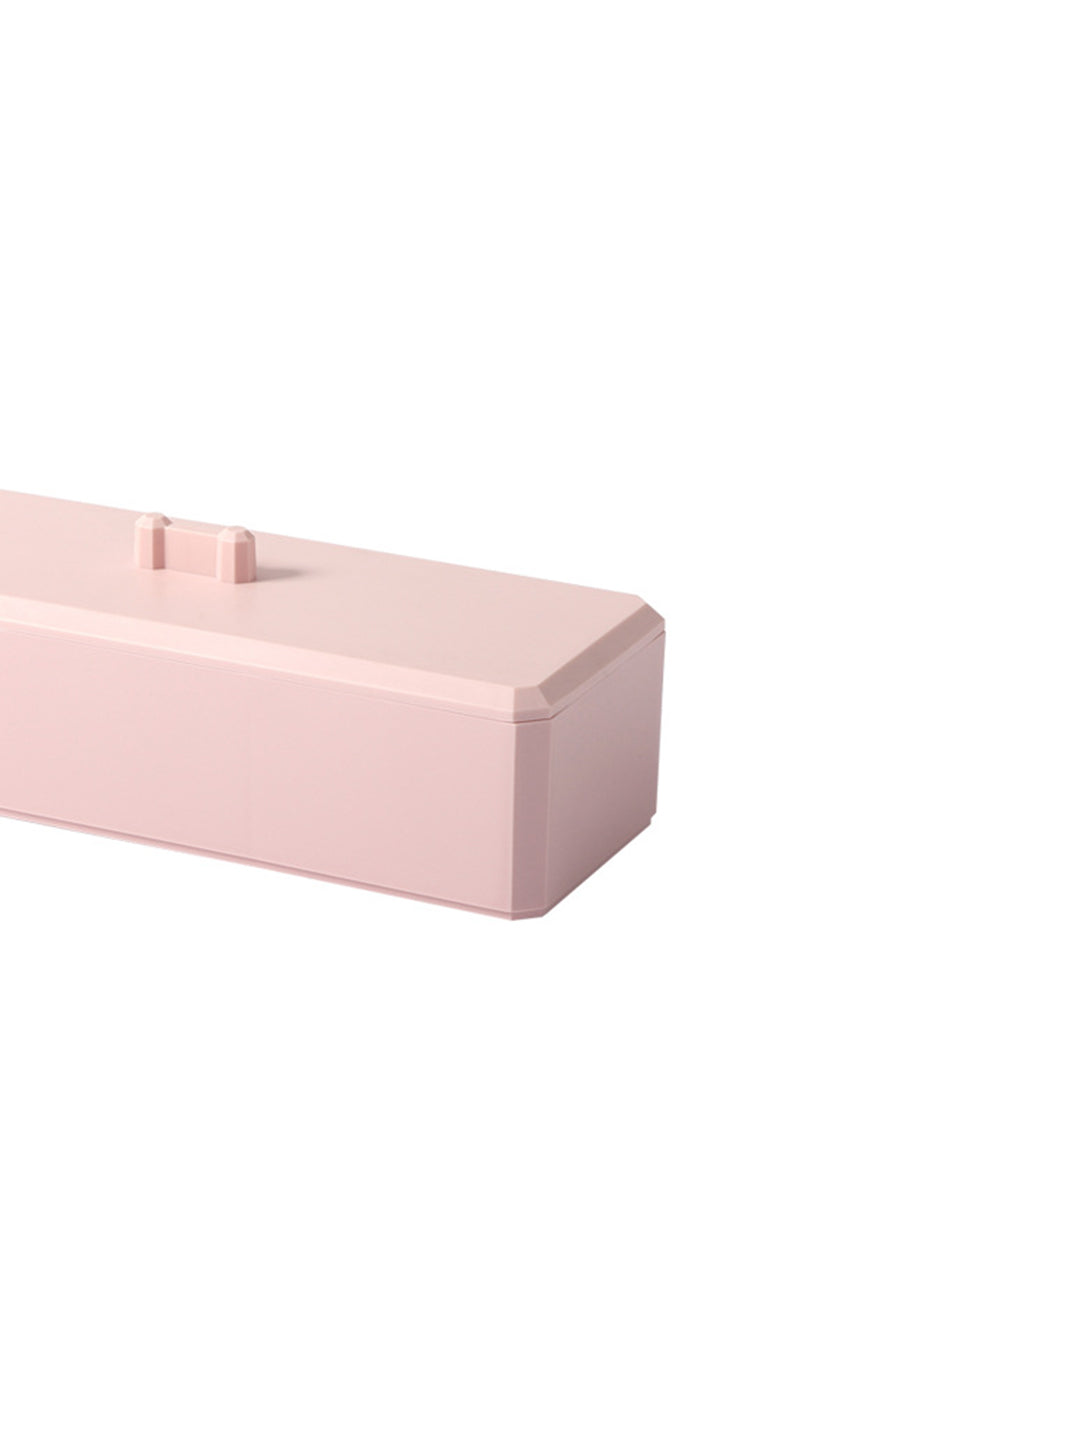 VON CASA Pink Makeup Organizer Container With Lid - 26X8.5X7cm